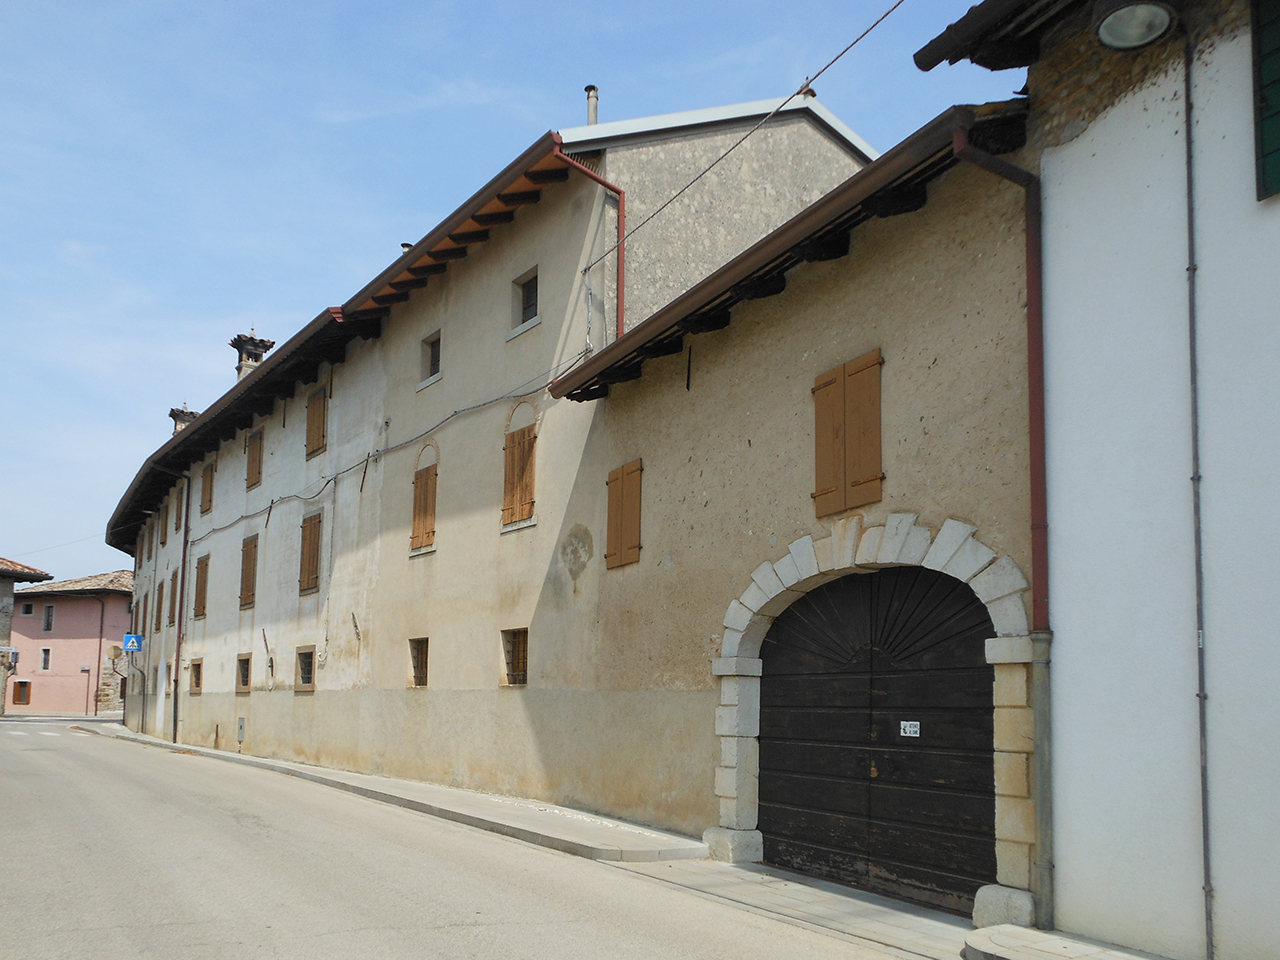 Casa Gottardo (casa, rurale) - Trivignano Udinese (UD) 